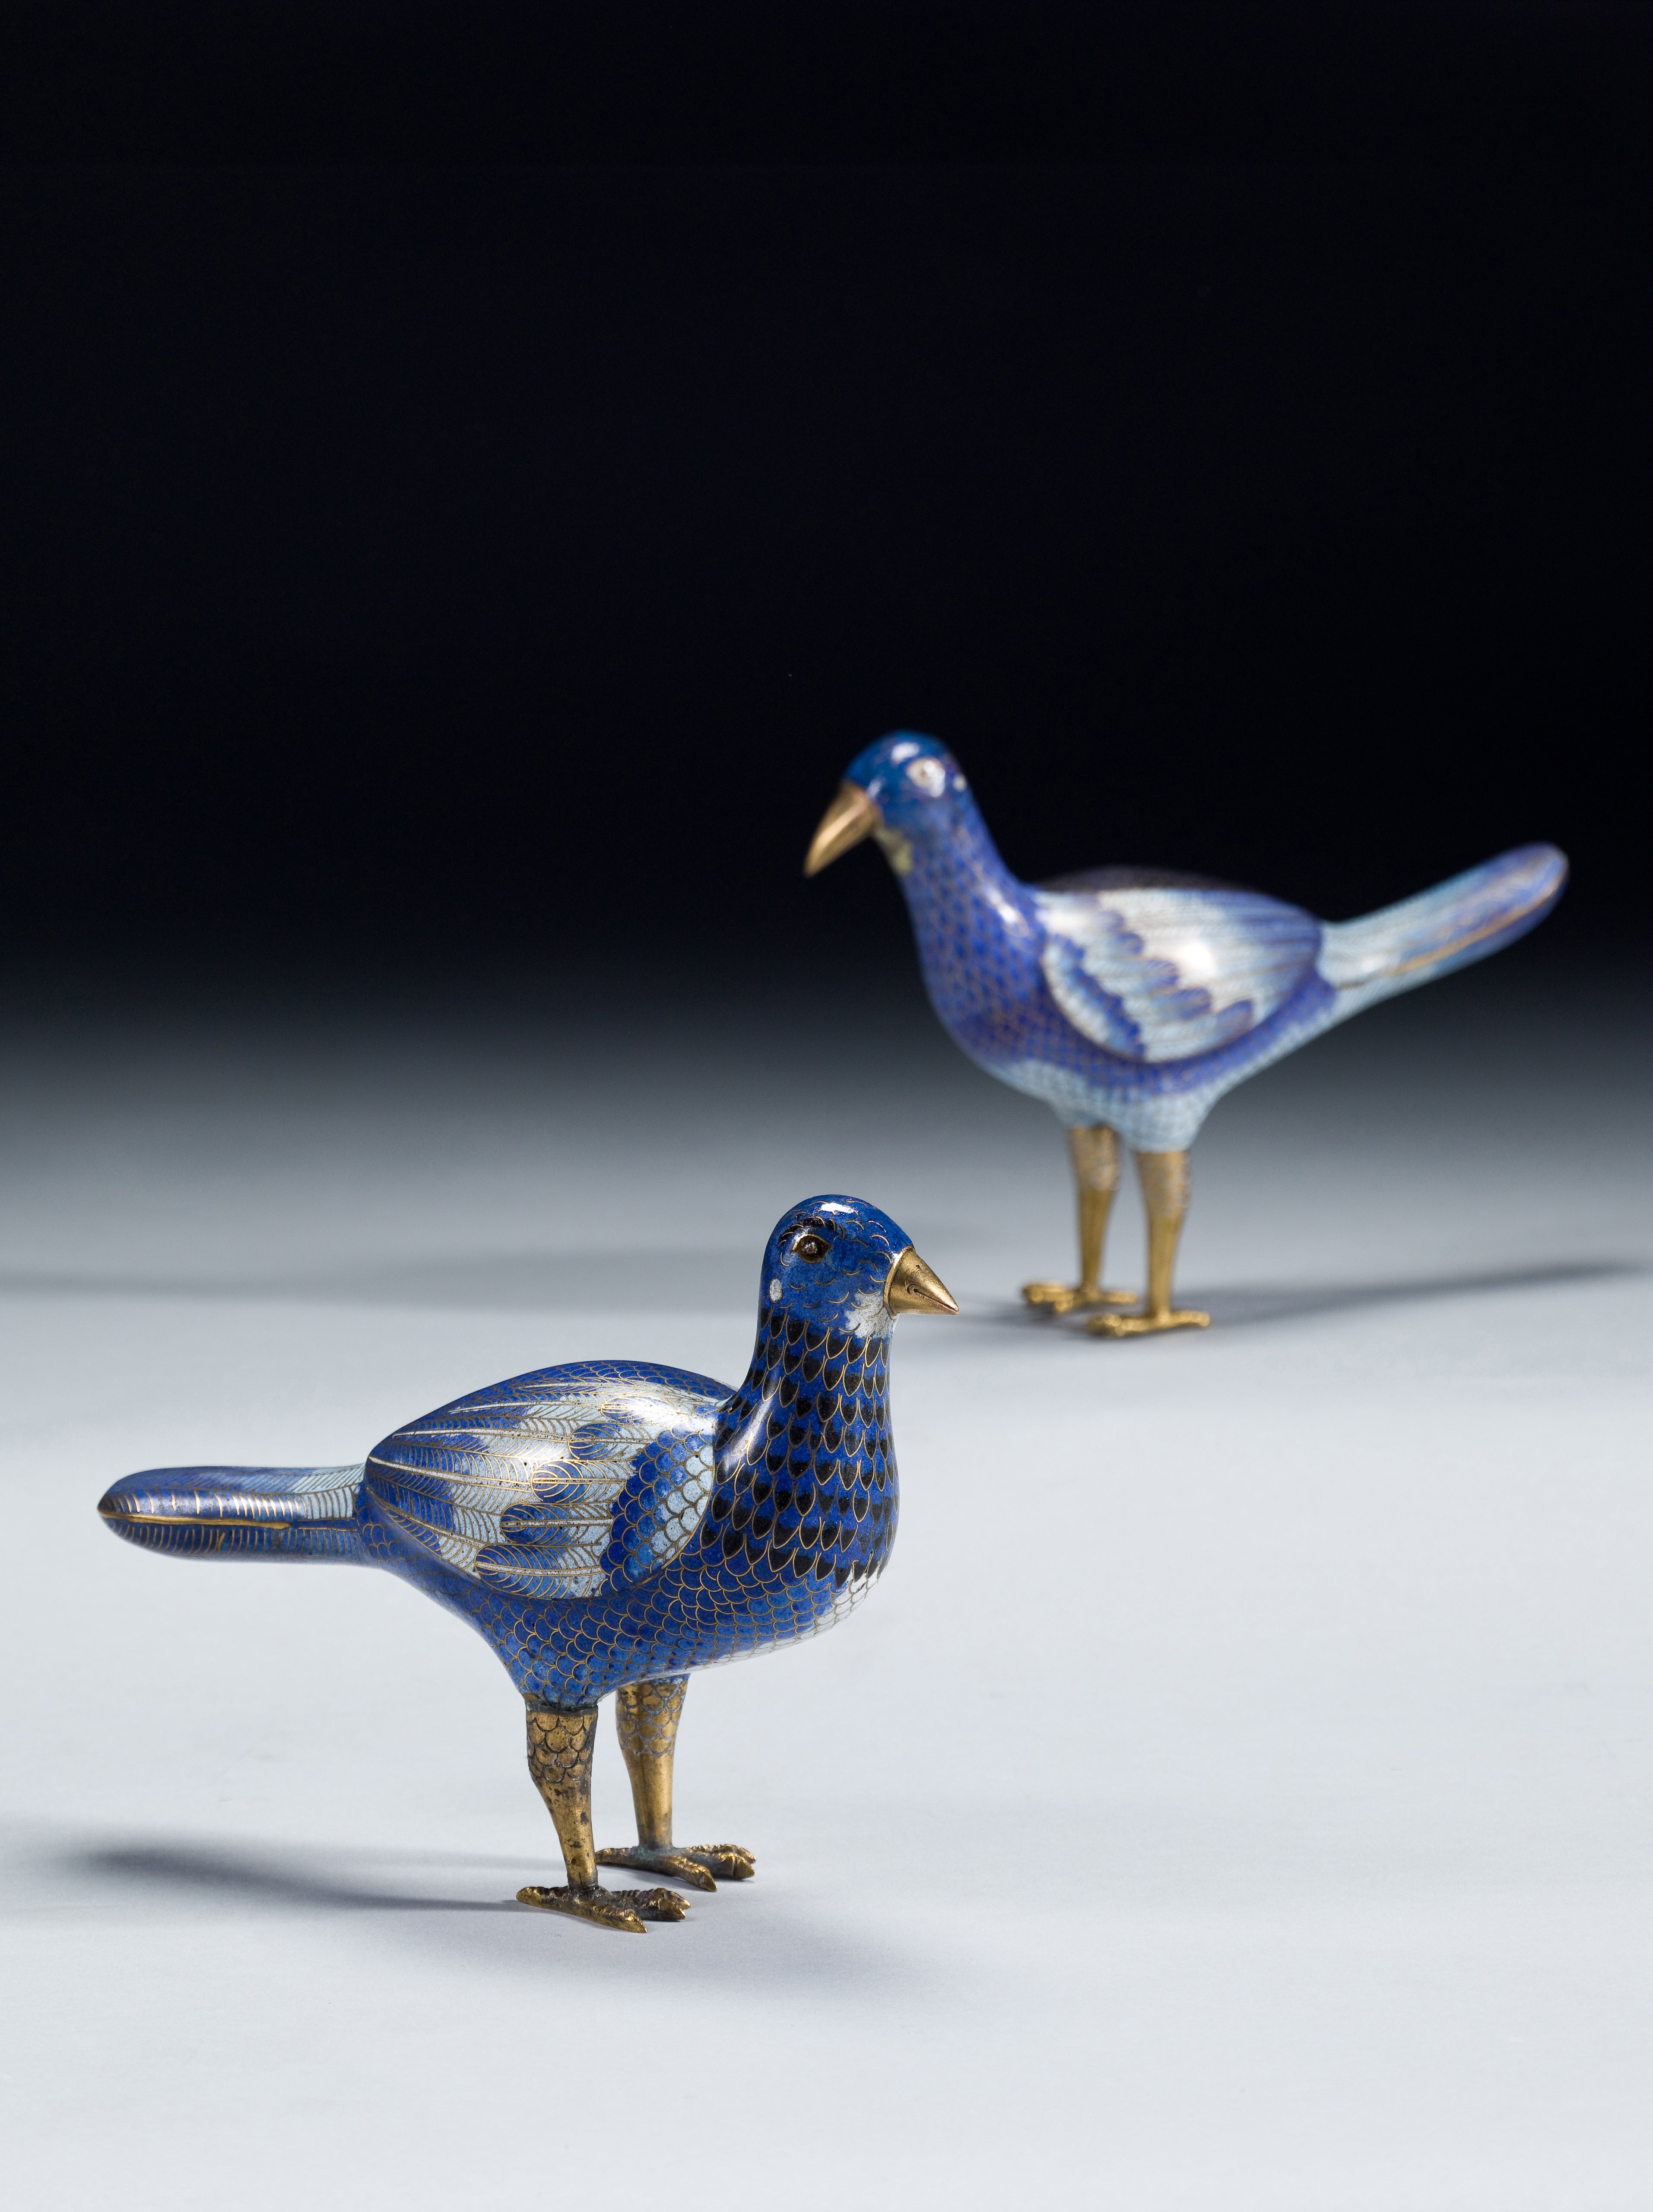 A Pair of Cloisonne Blue Pigeons